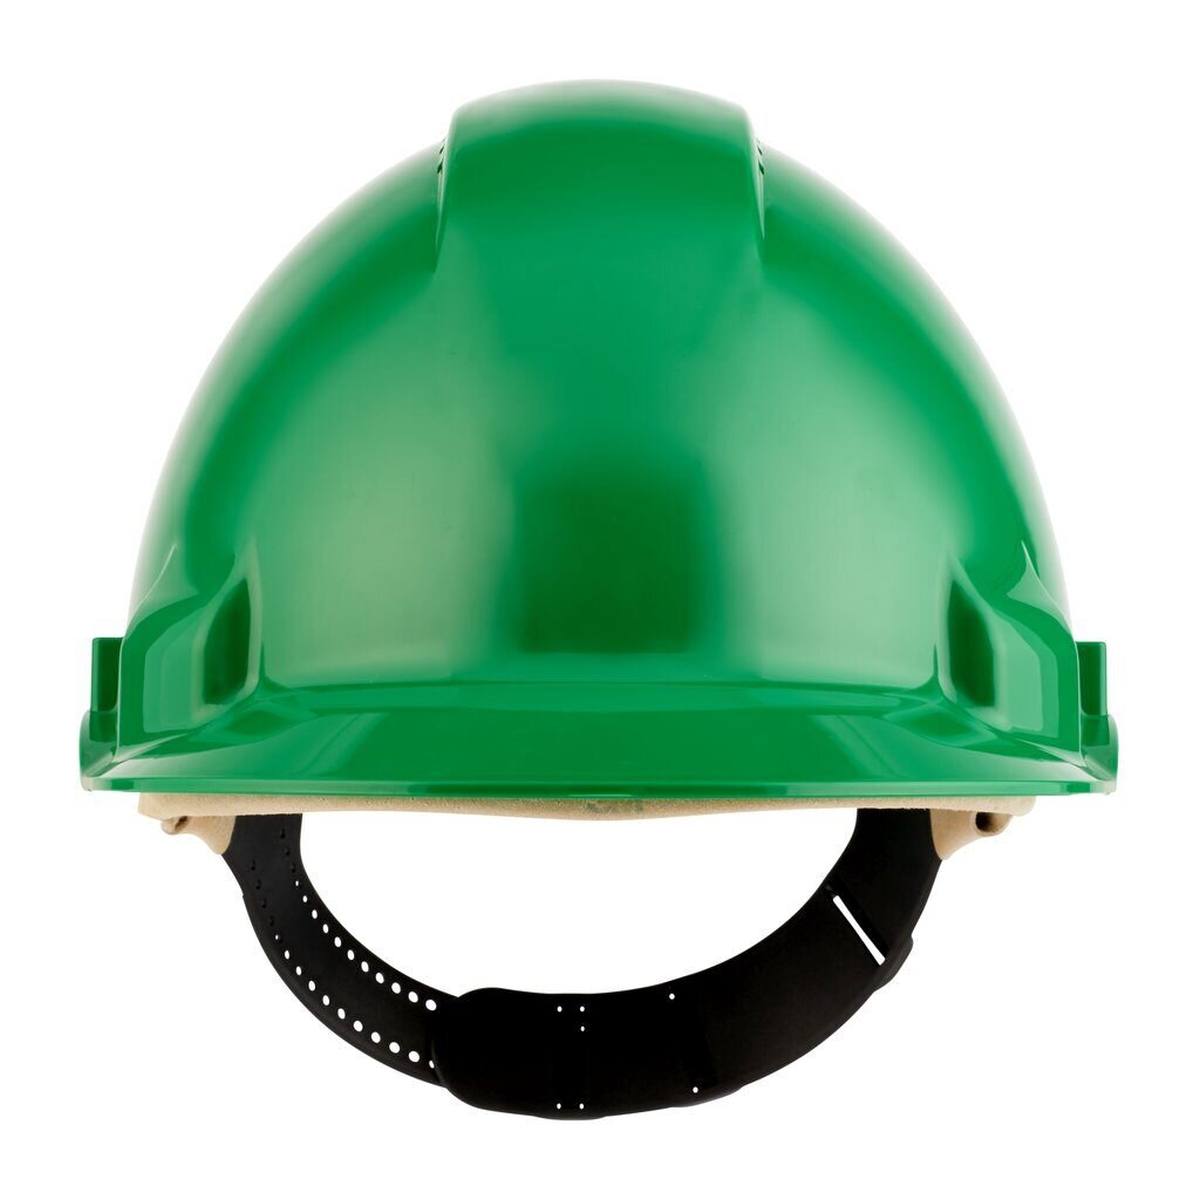 3M Casco de seguridad G3000 G30DUG de color verde, ventilado, con uvicator, pinlock y banda de sudor de cuero